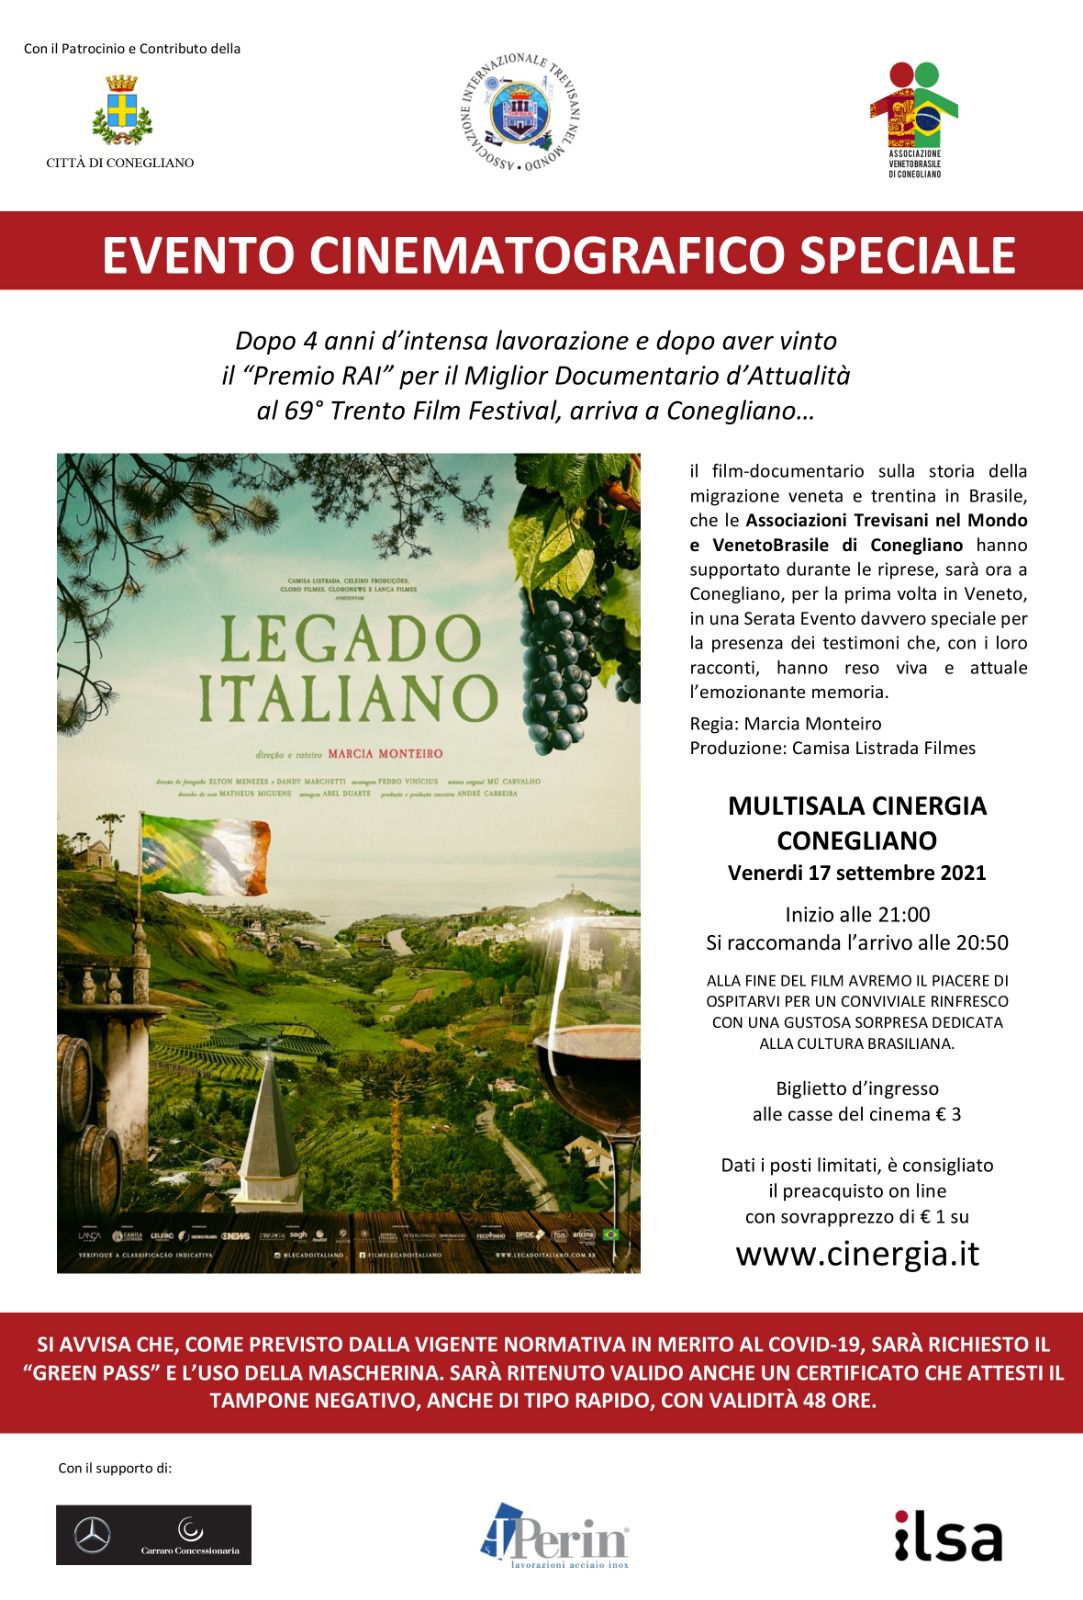 Evento cinematografico speciale 17 settembre 2021 Cinergia Conegliano